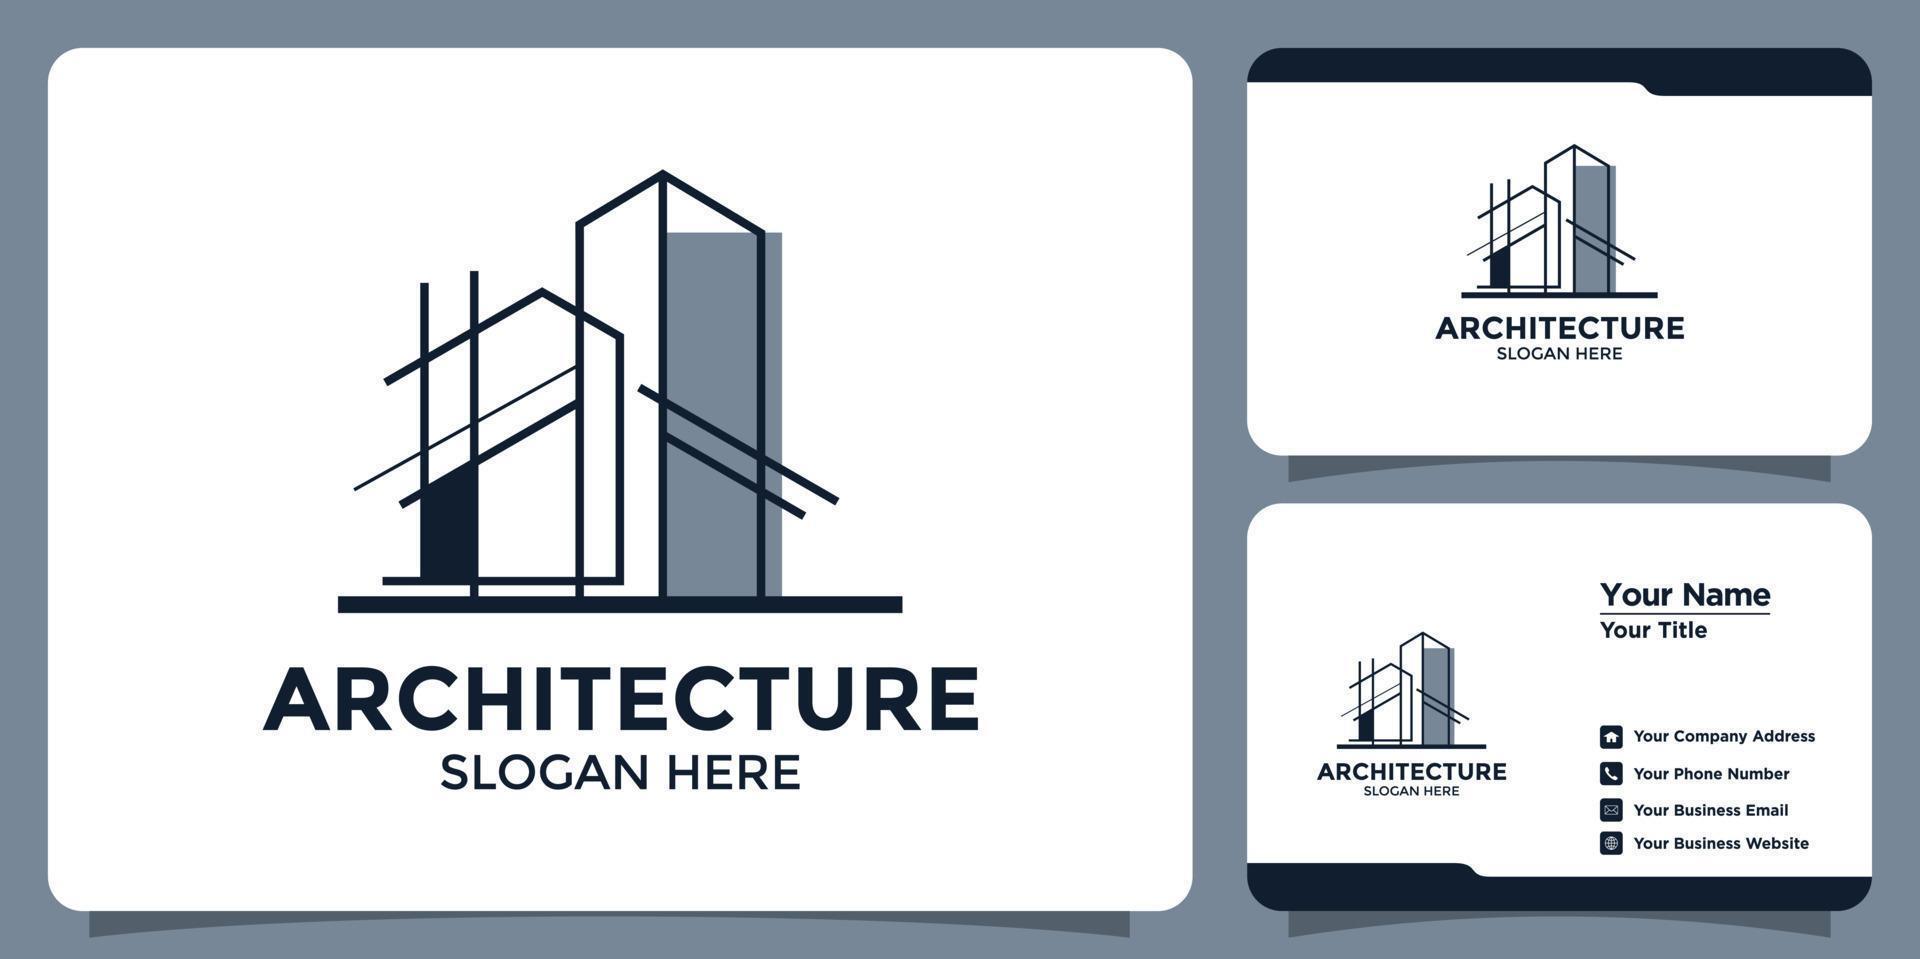 diseño de logotipo de arquitectura moderna y plantilla de tarjeta de marca vector